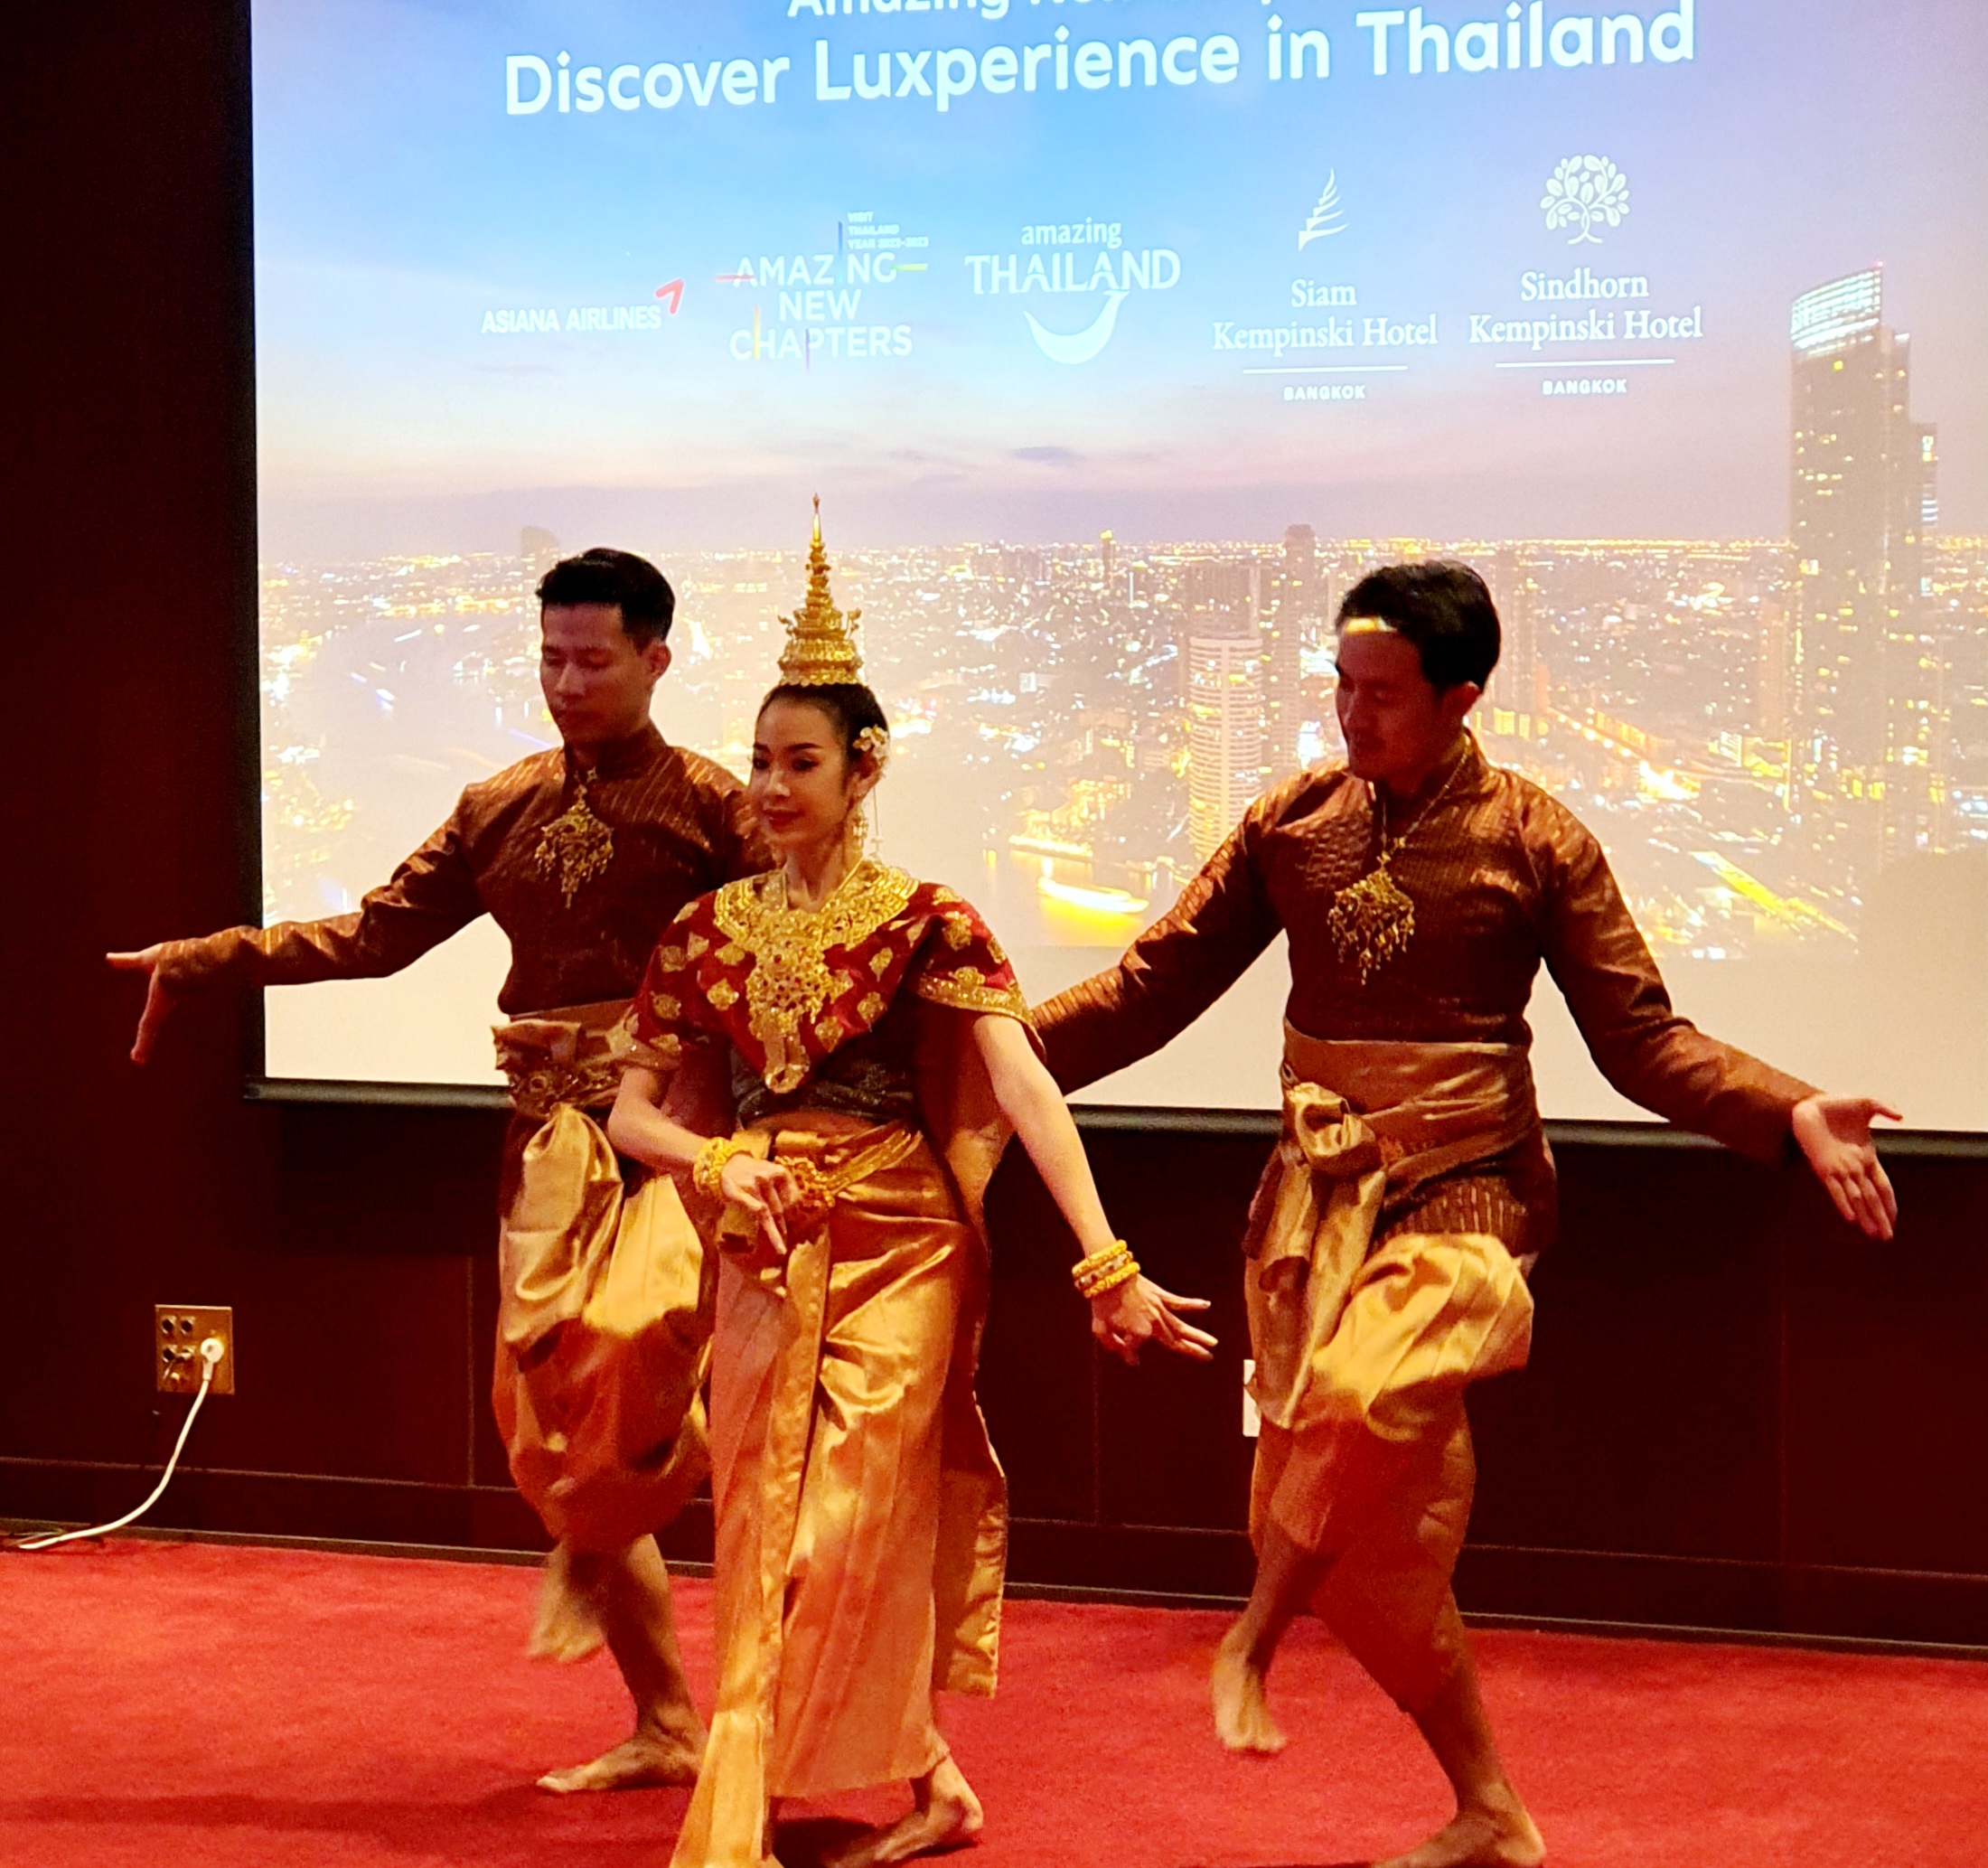 25일 서울 퇴계로의 한 호텔에서 열린 태국관광청 행사에서 태국 무용수들이 전통춤을 선보이고 있다.